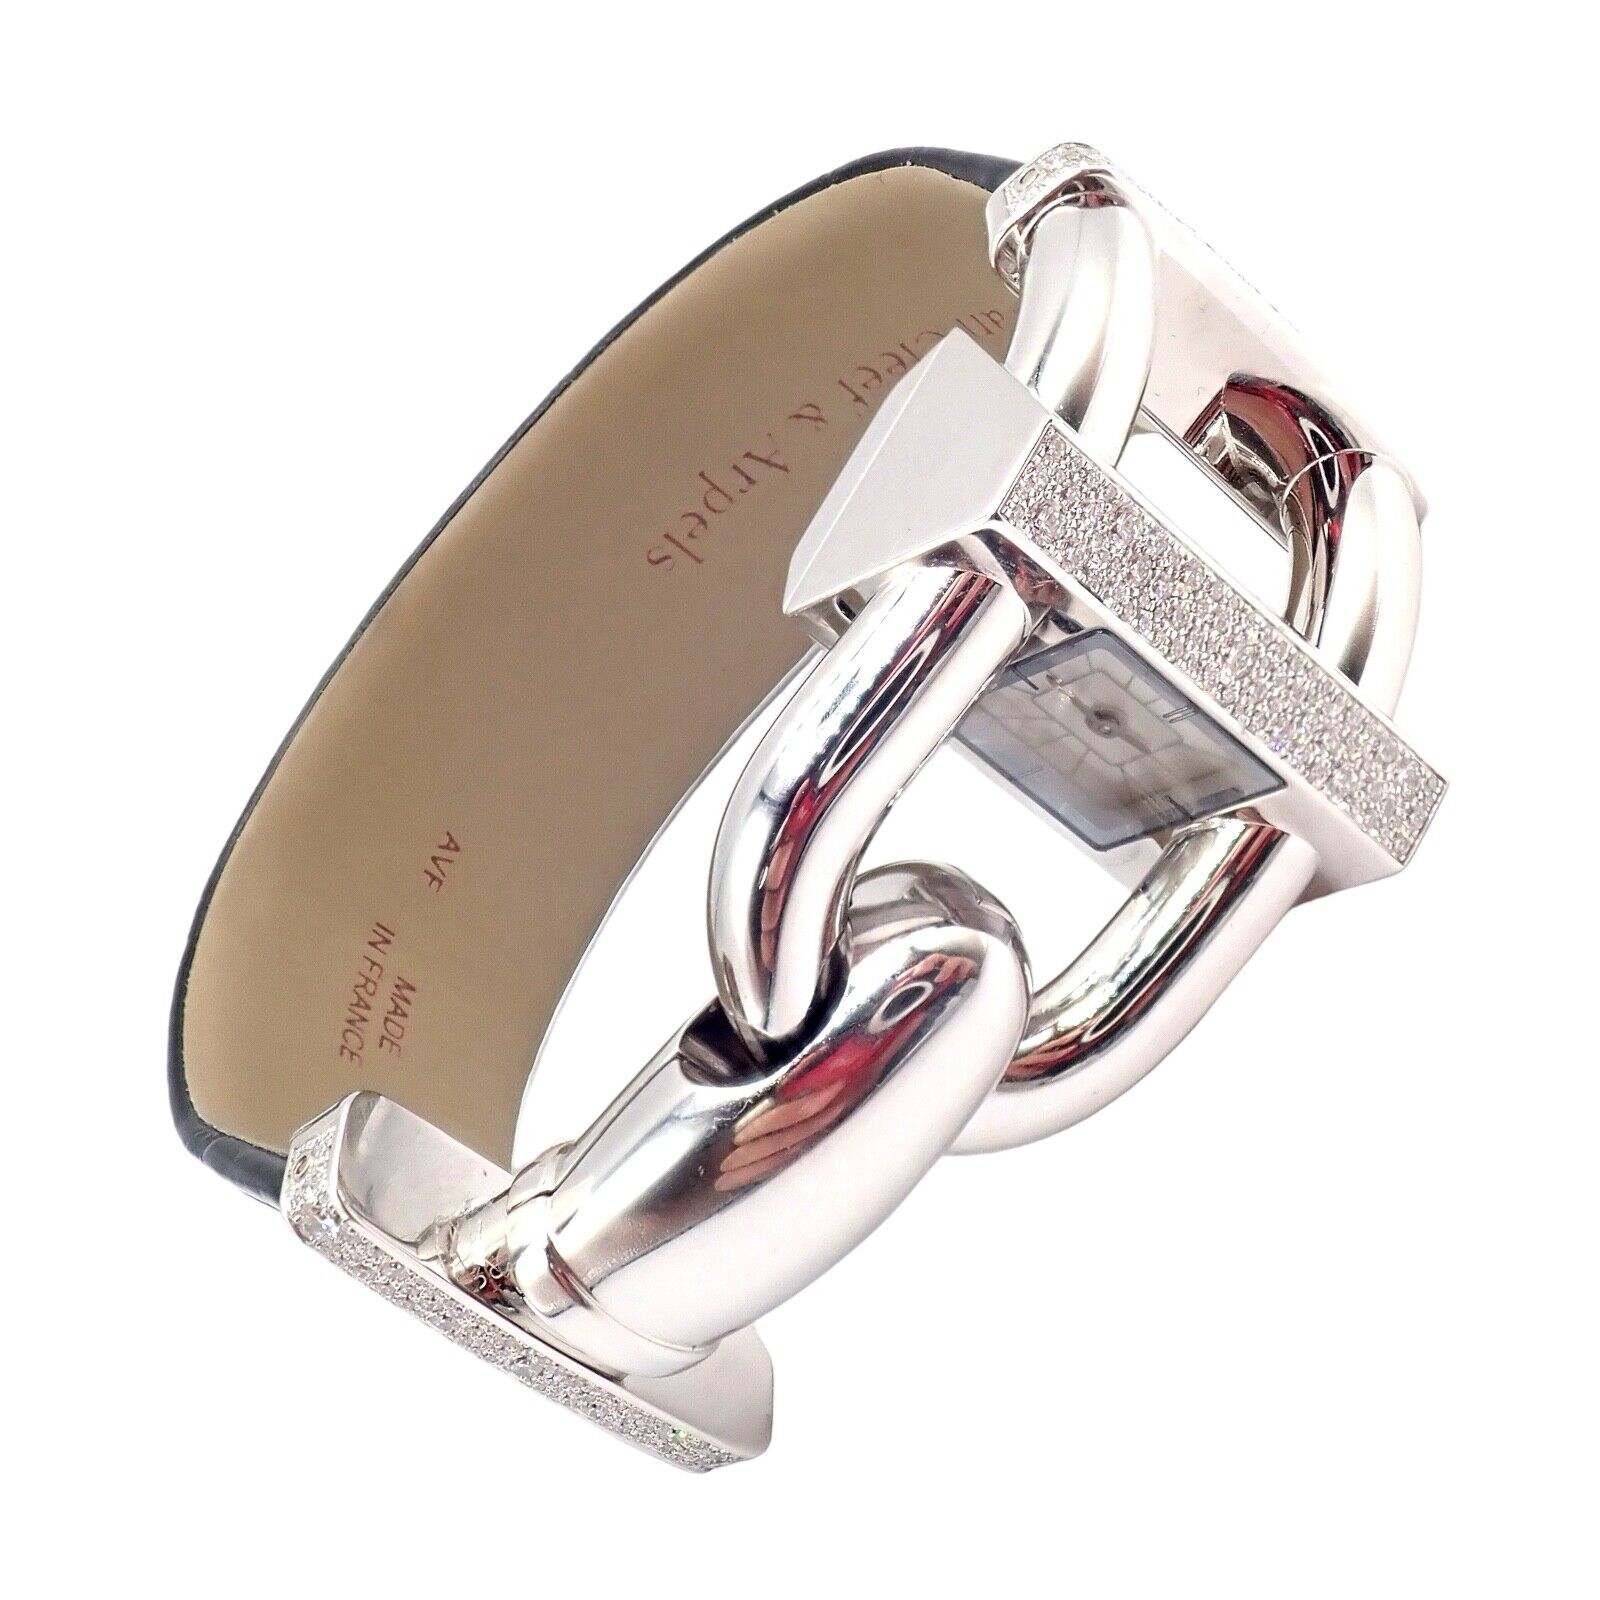 Van Cleef & Arpels Jewelry & Watches:Watches, Parts & Accessories:Watches:Wristwatches Authentic! Van Cleef & Arpels 18K White Gold Diamond Cadenas Alligator Watch